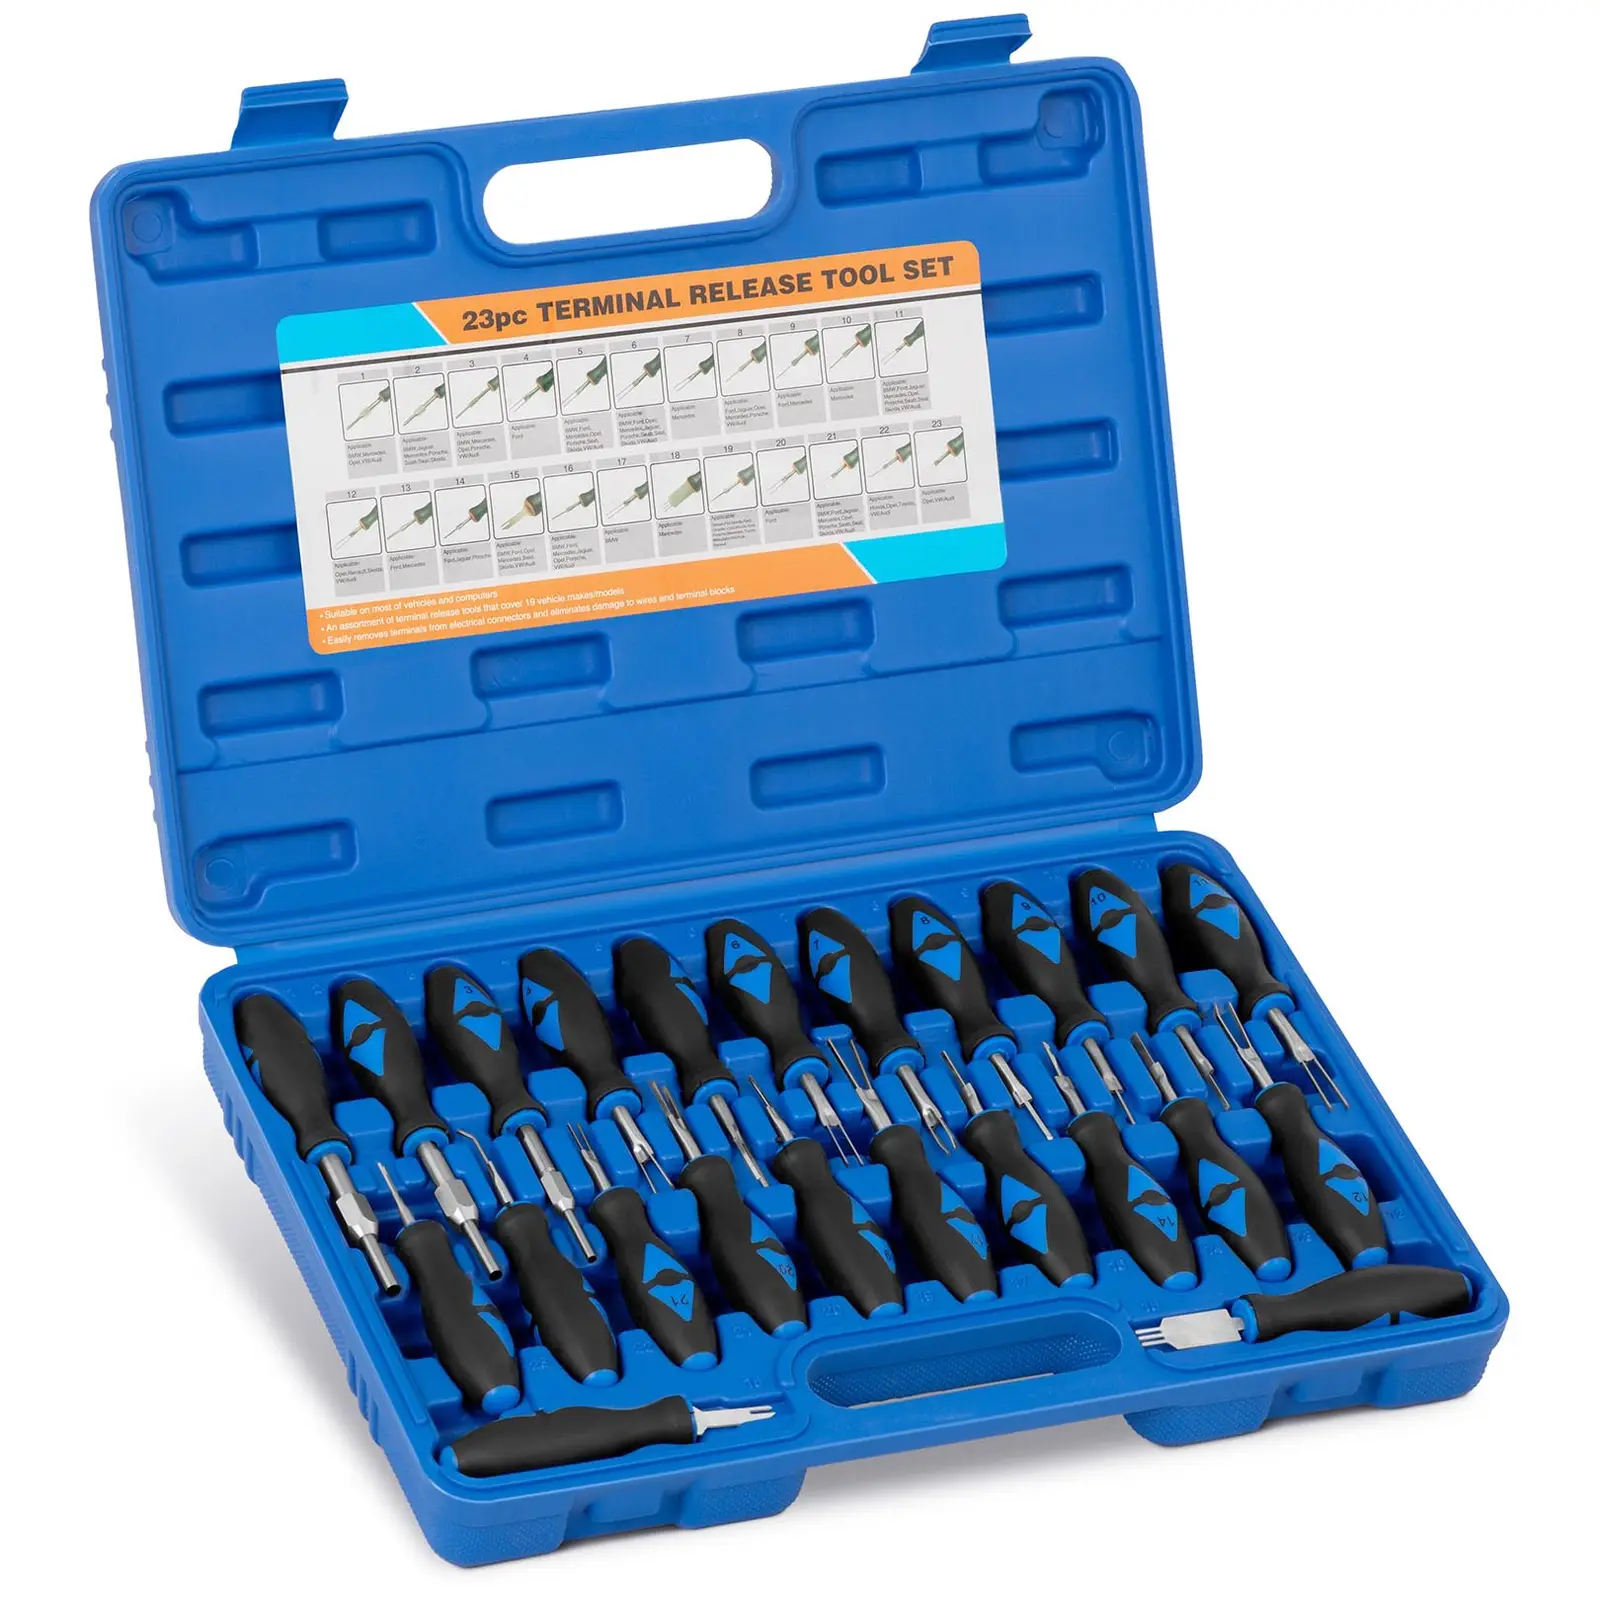 Kit de ferramentas de remoção de terminais - 23 pcs. - Núcleo: polipropileno, cabo: borracha (TPR) / aço inoxidável